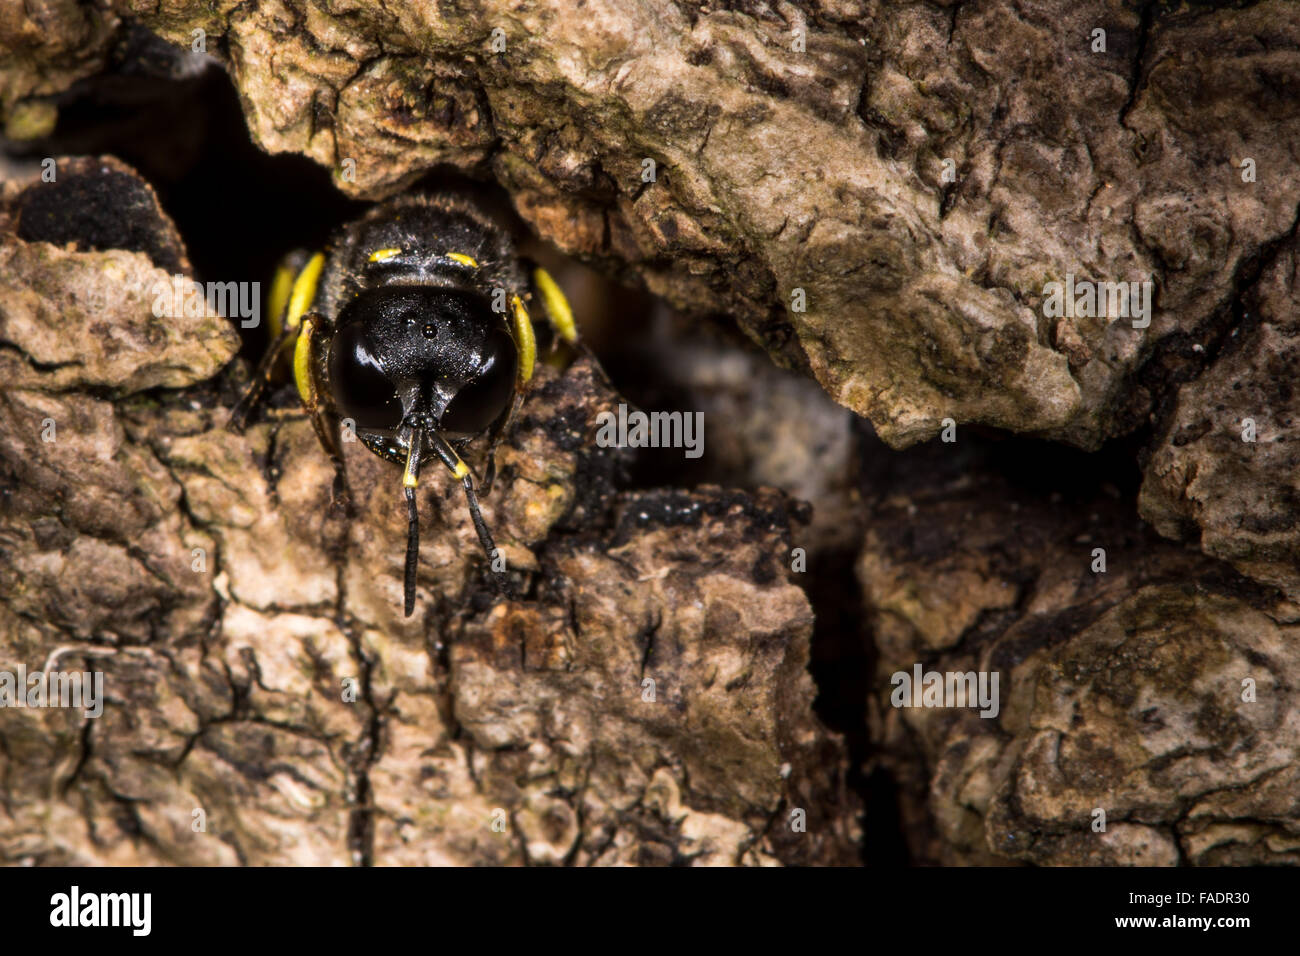 Digger wasp Ectemnius continuus emergente dal tunnel nel registro. Un escavatore wasp nella famiglia Crabronidae, emergenti da un nido Foto Stock